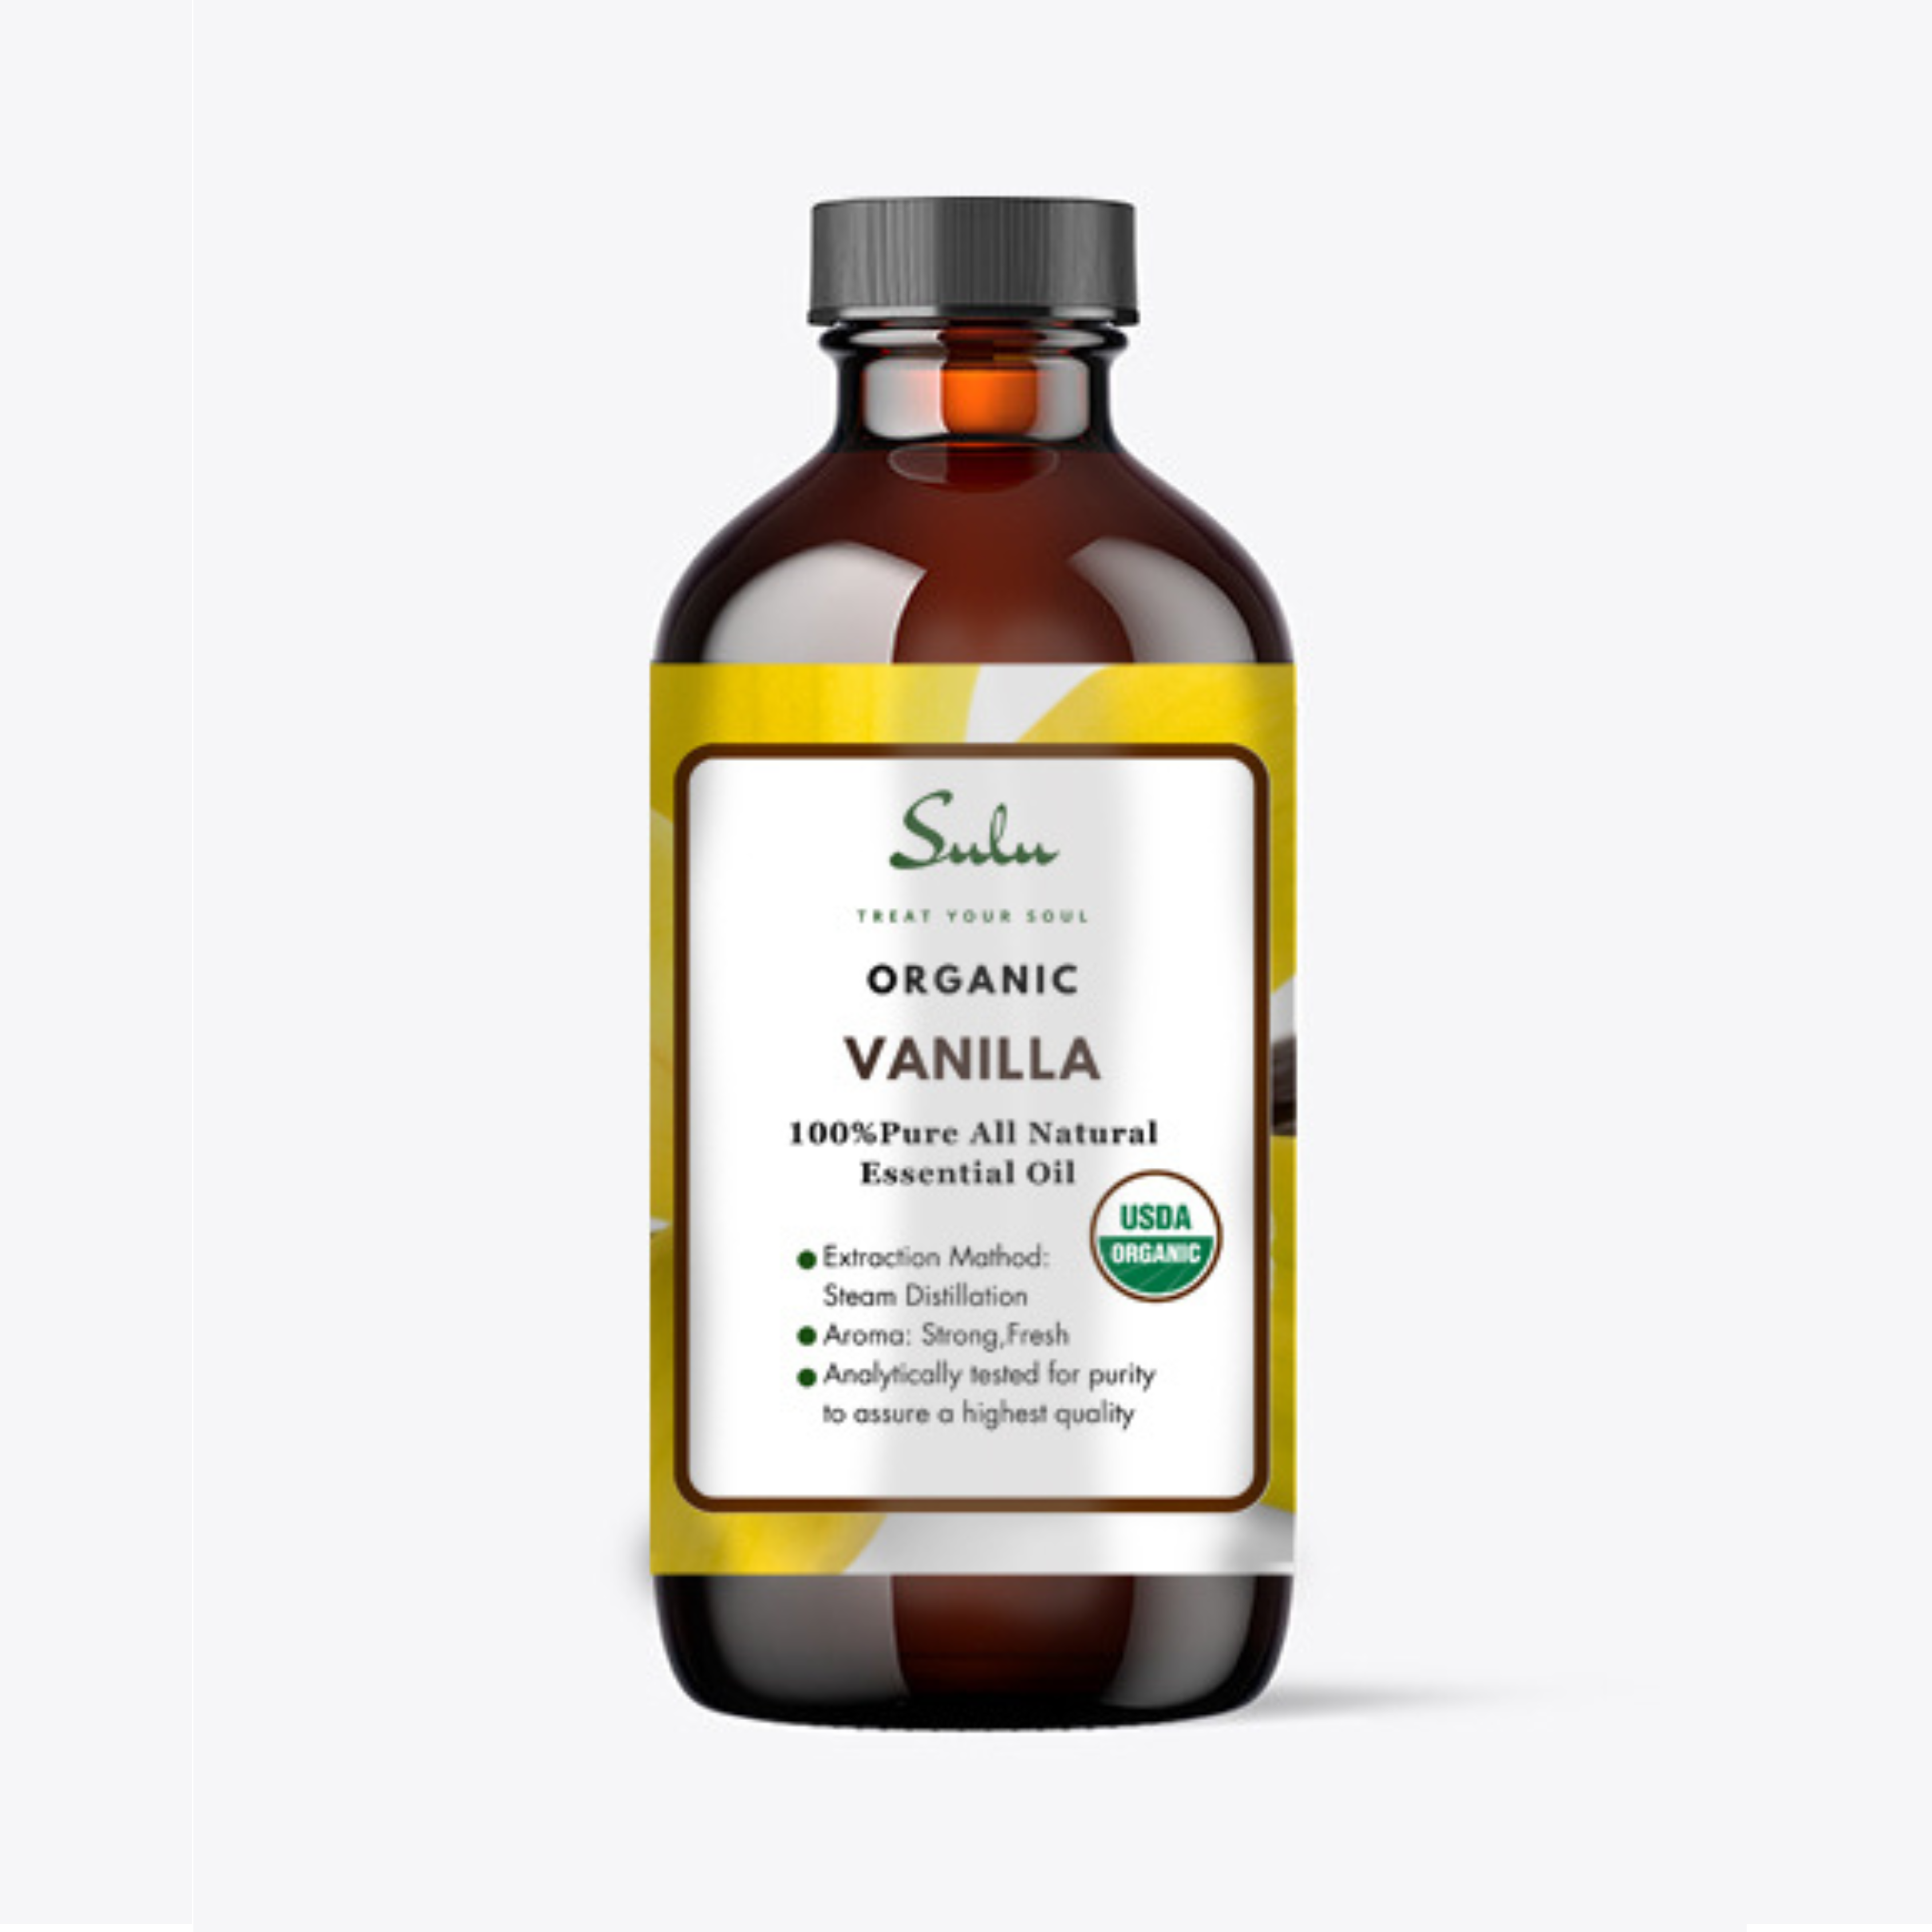 H'ana Vanilla Essential Oil for Diffuser & Skin (1 fl oz